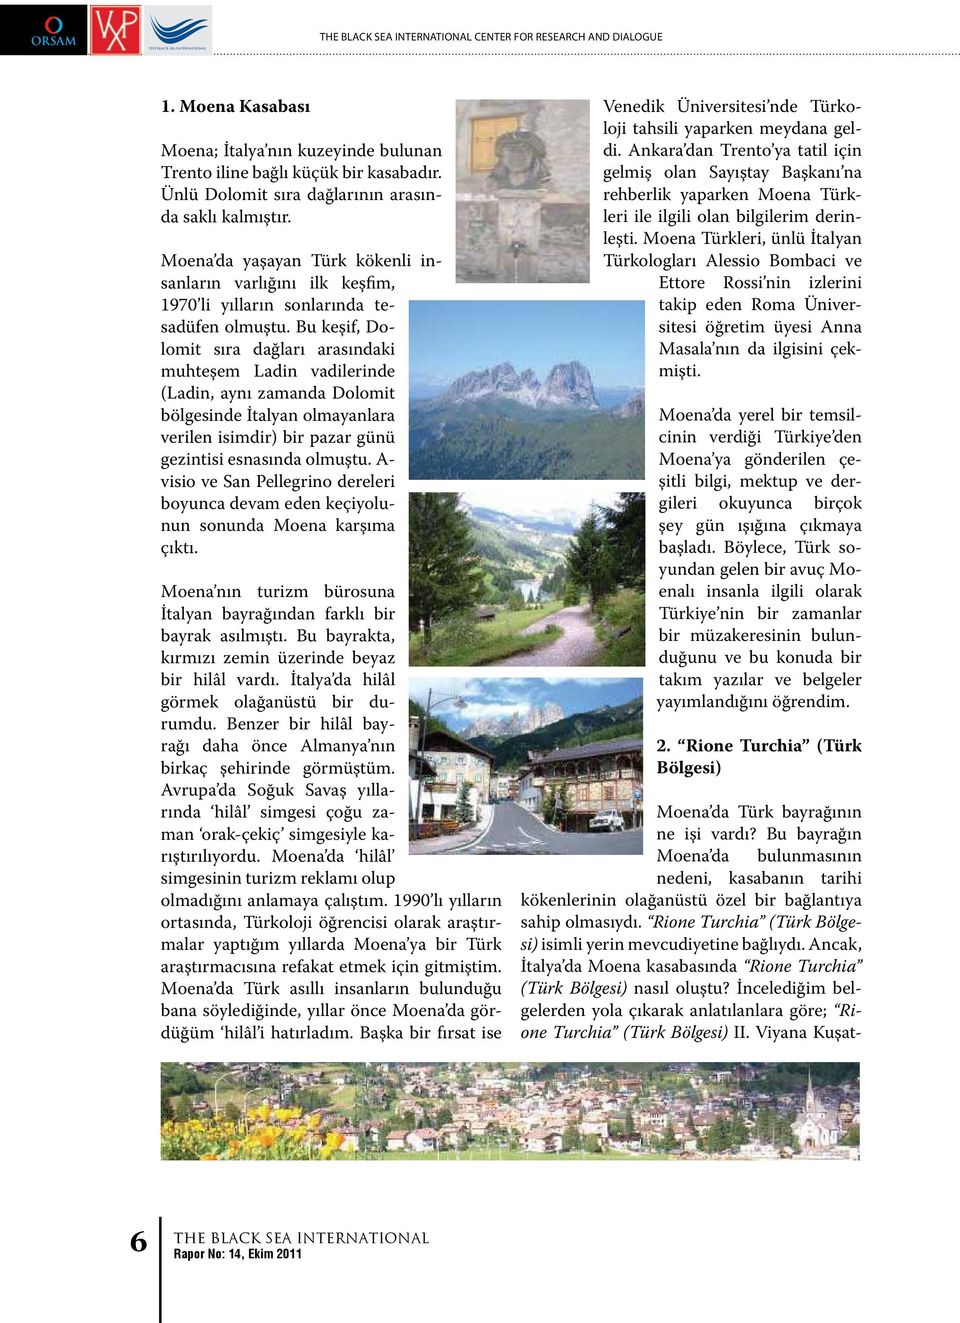 Bu keşif, Dolomit sıra dağları arasındaki muhteşem Ladin vadilerinde (Ladin, aynı zamanda Dolomit bölgesinde İtalyan olmayanlara verilen isimdir) bir pazar günü gezintisi esnasında olmuştu.